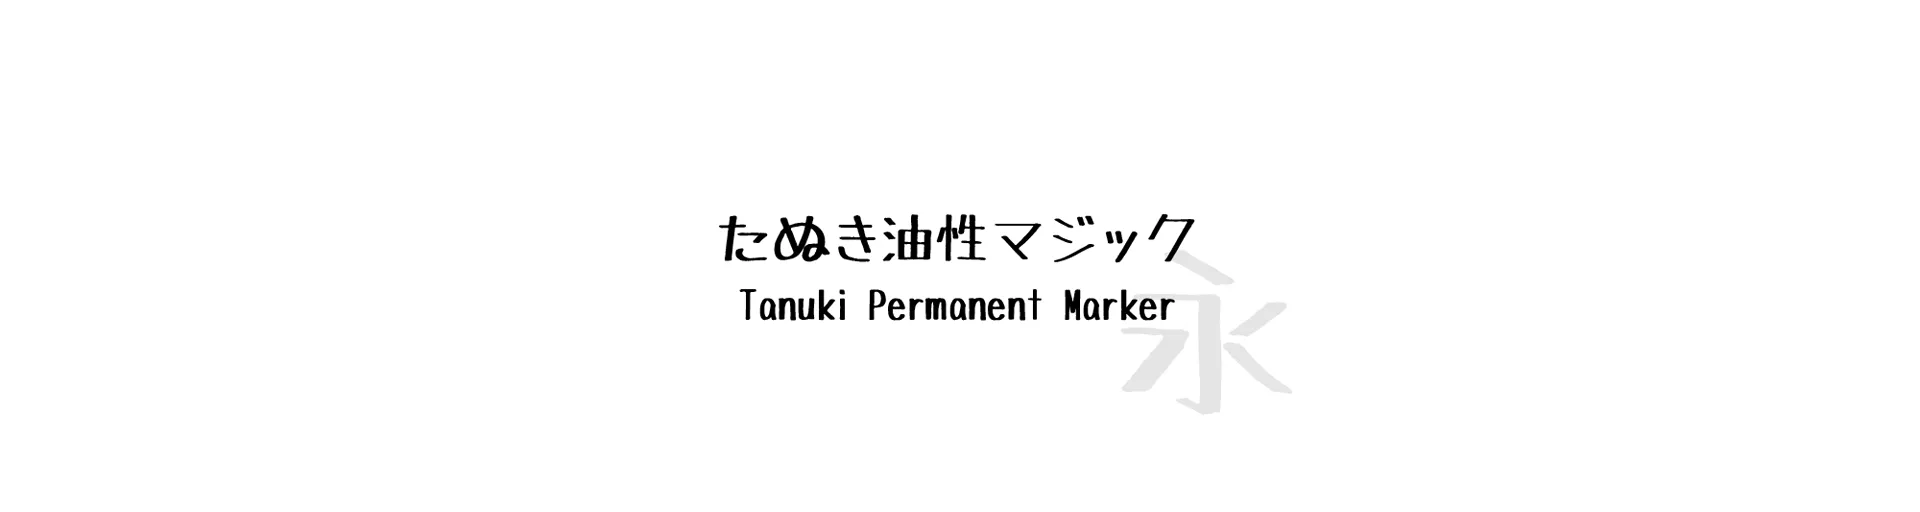 Tanuki Permanent Marker